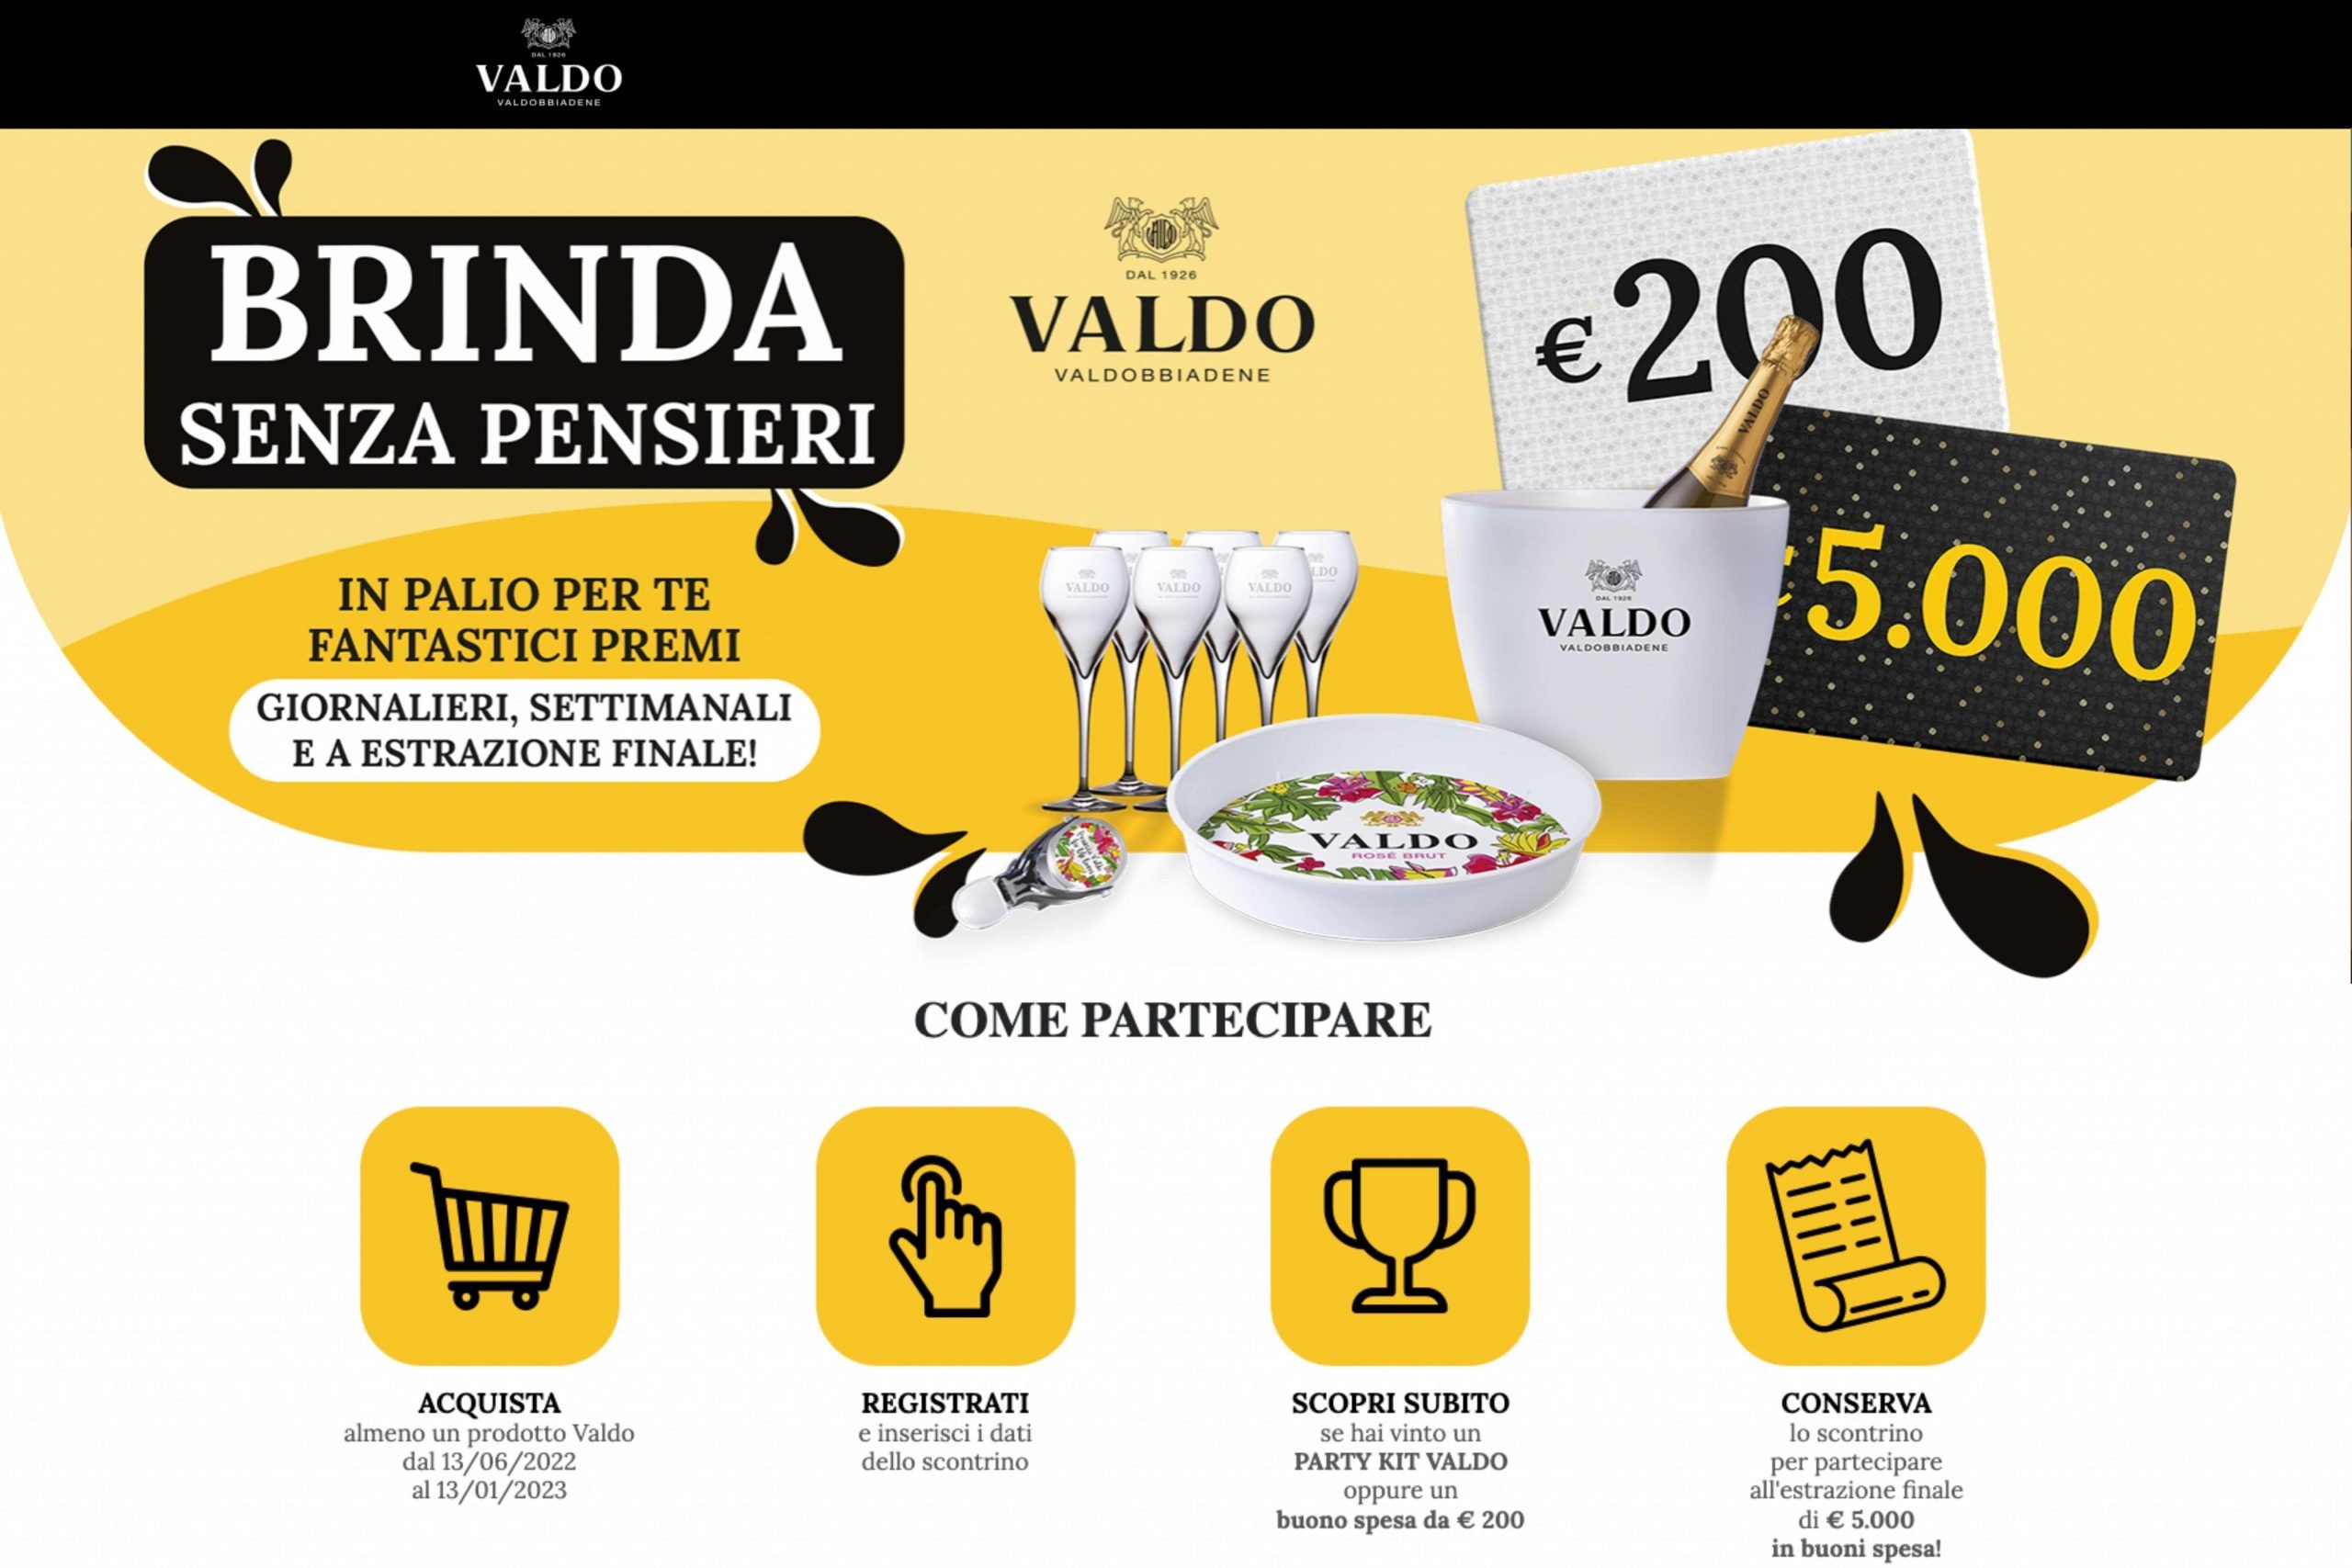 Concorso “Brinda senza pensieri” by Valdo: come vincere un party kit e buoni spesa fino a 5000€